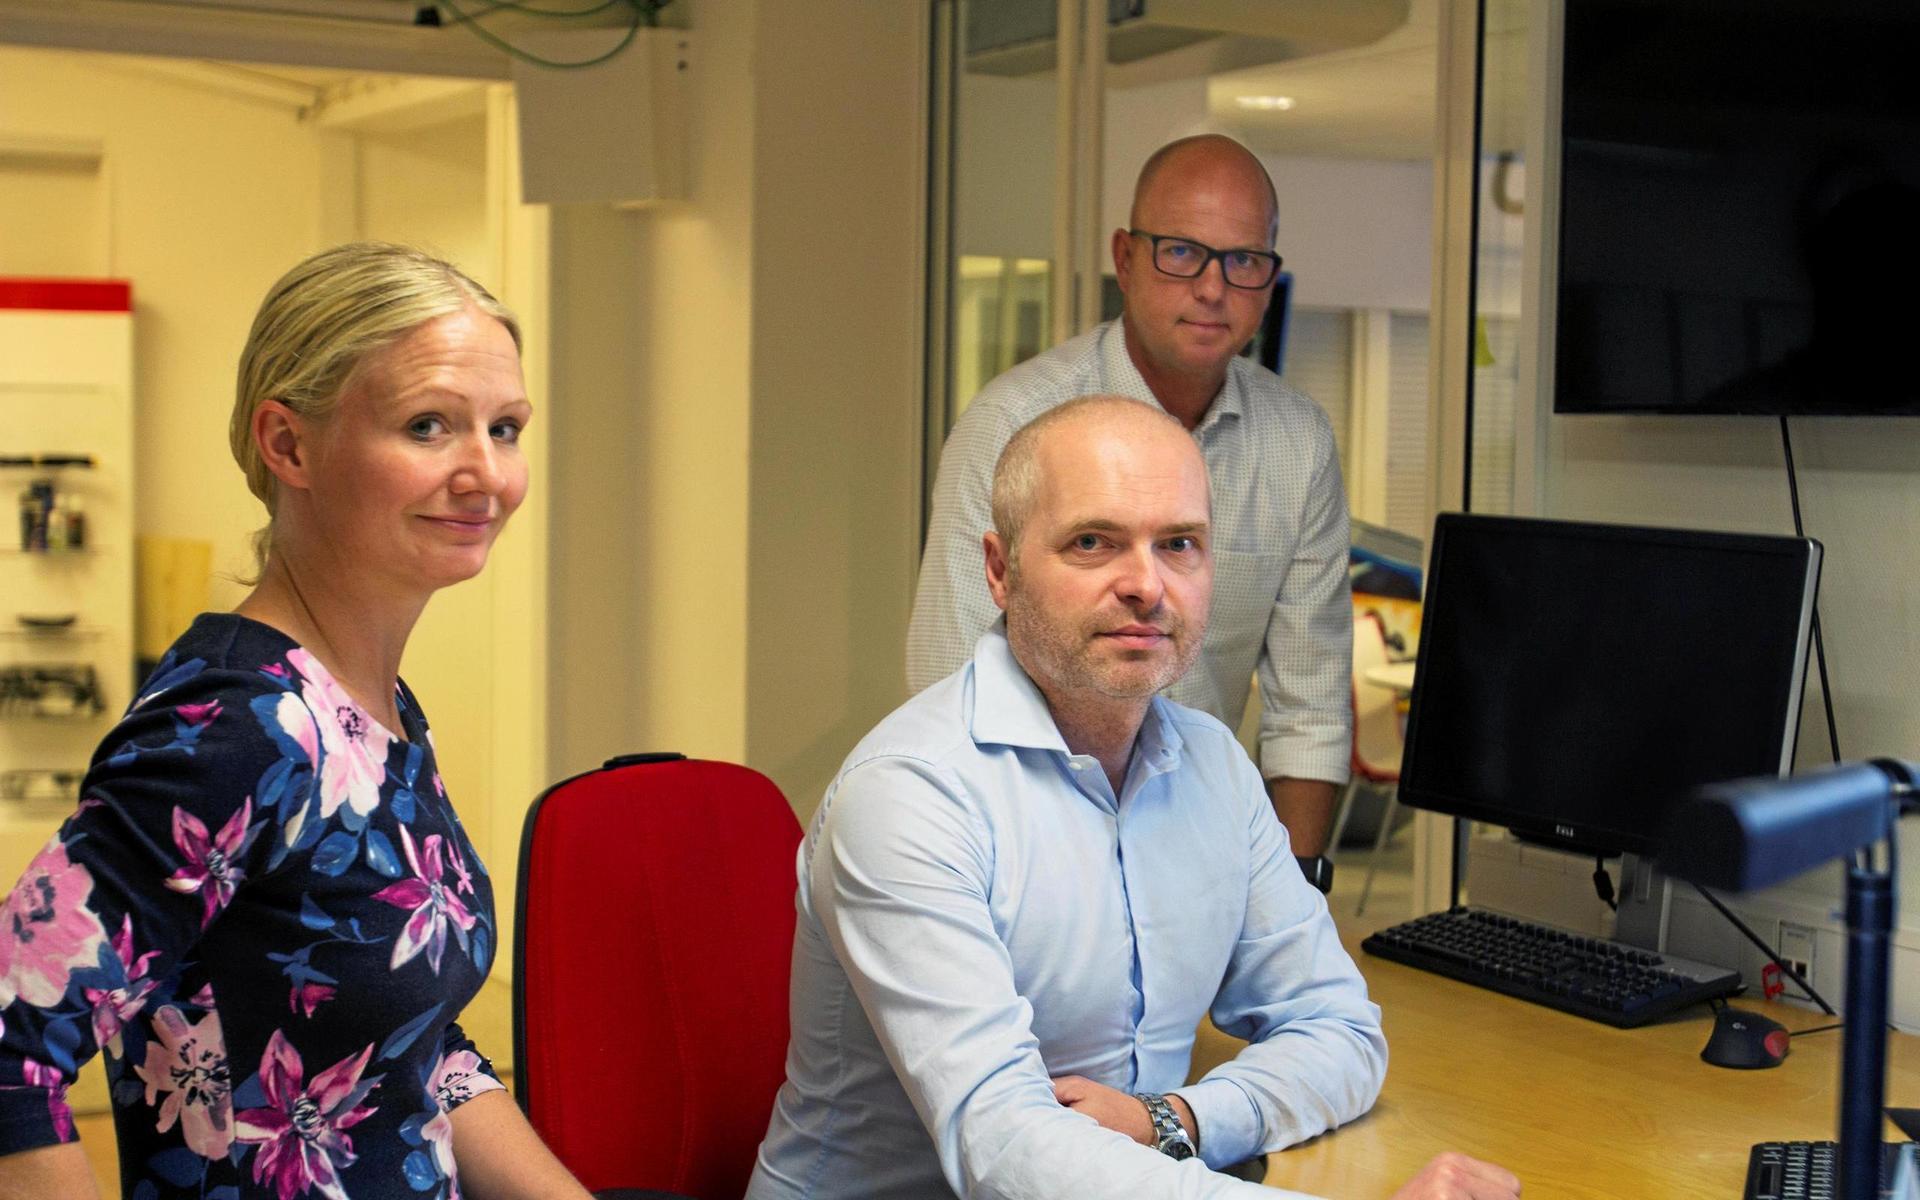 Catharina och Michael Ahlén driver Purefun Group, som nu ska etablera sig i Torup genom systerbolaget Purefun Logistic. Företaget säljer vuxenleksaker. I bakgrunden syns Olle Olsson som ansvarar för försäljning och inköp vid företagets fabrik i Skåne.